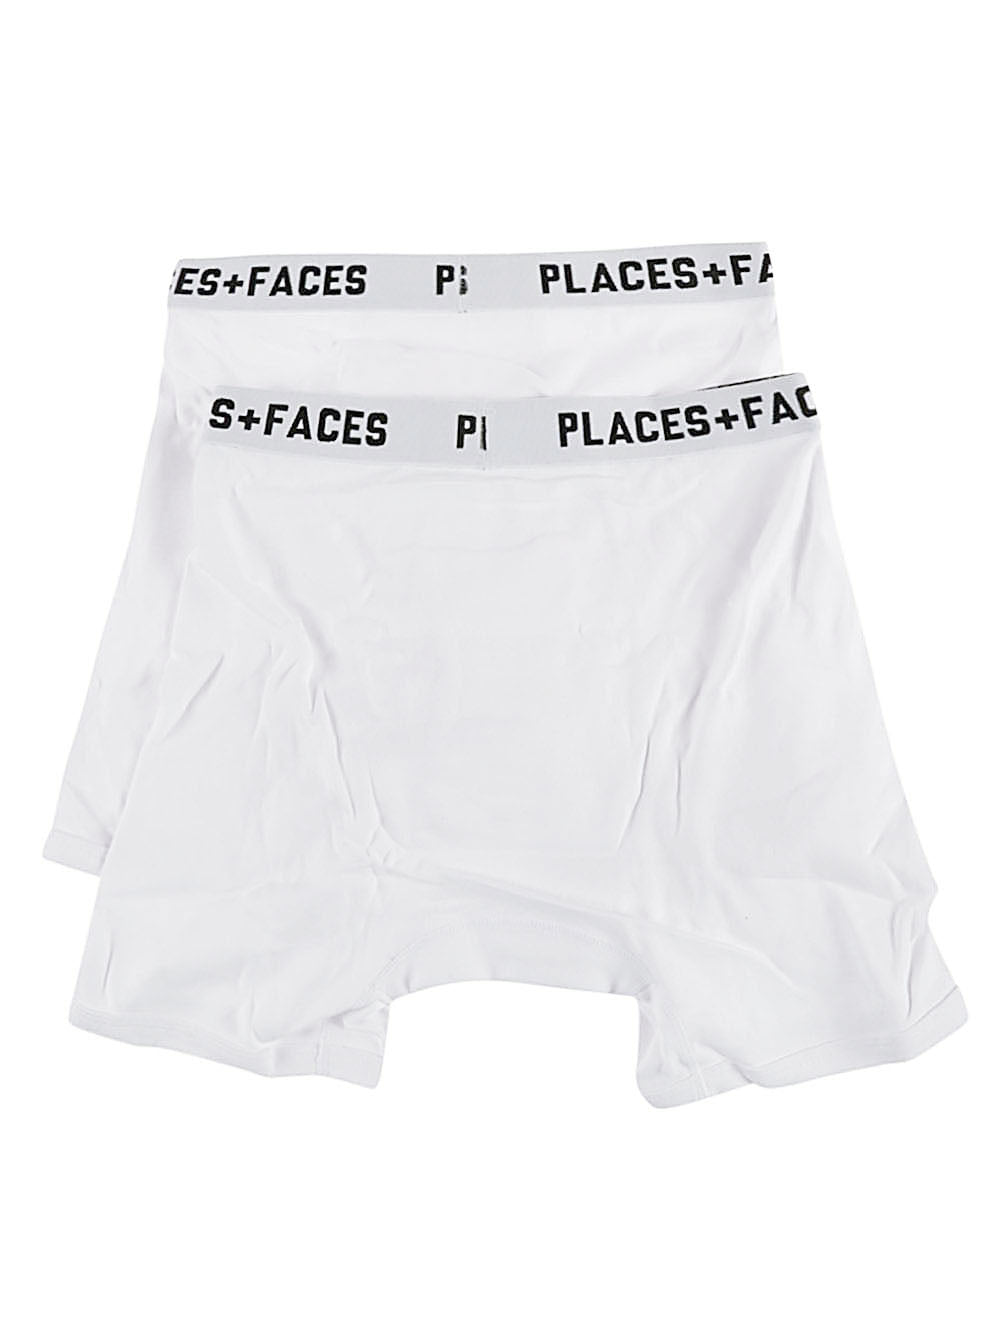 Places+Faces PLACES+FACES Underwear White